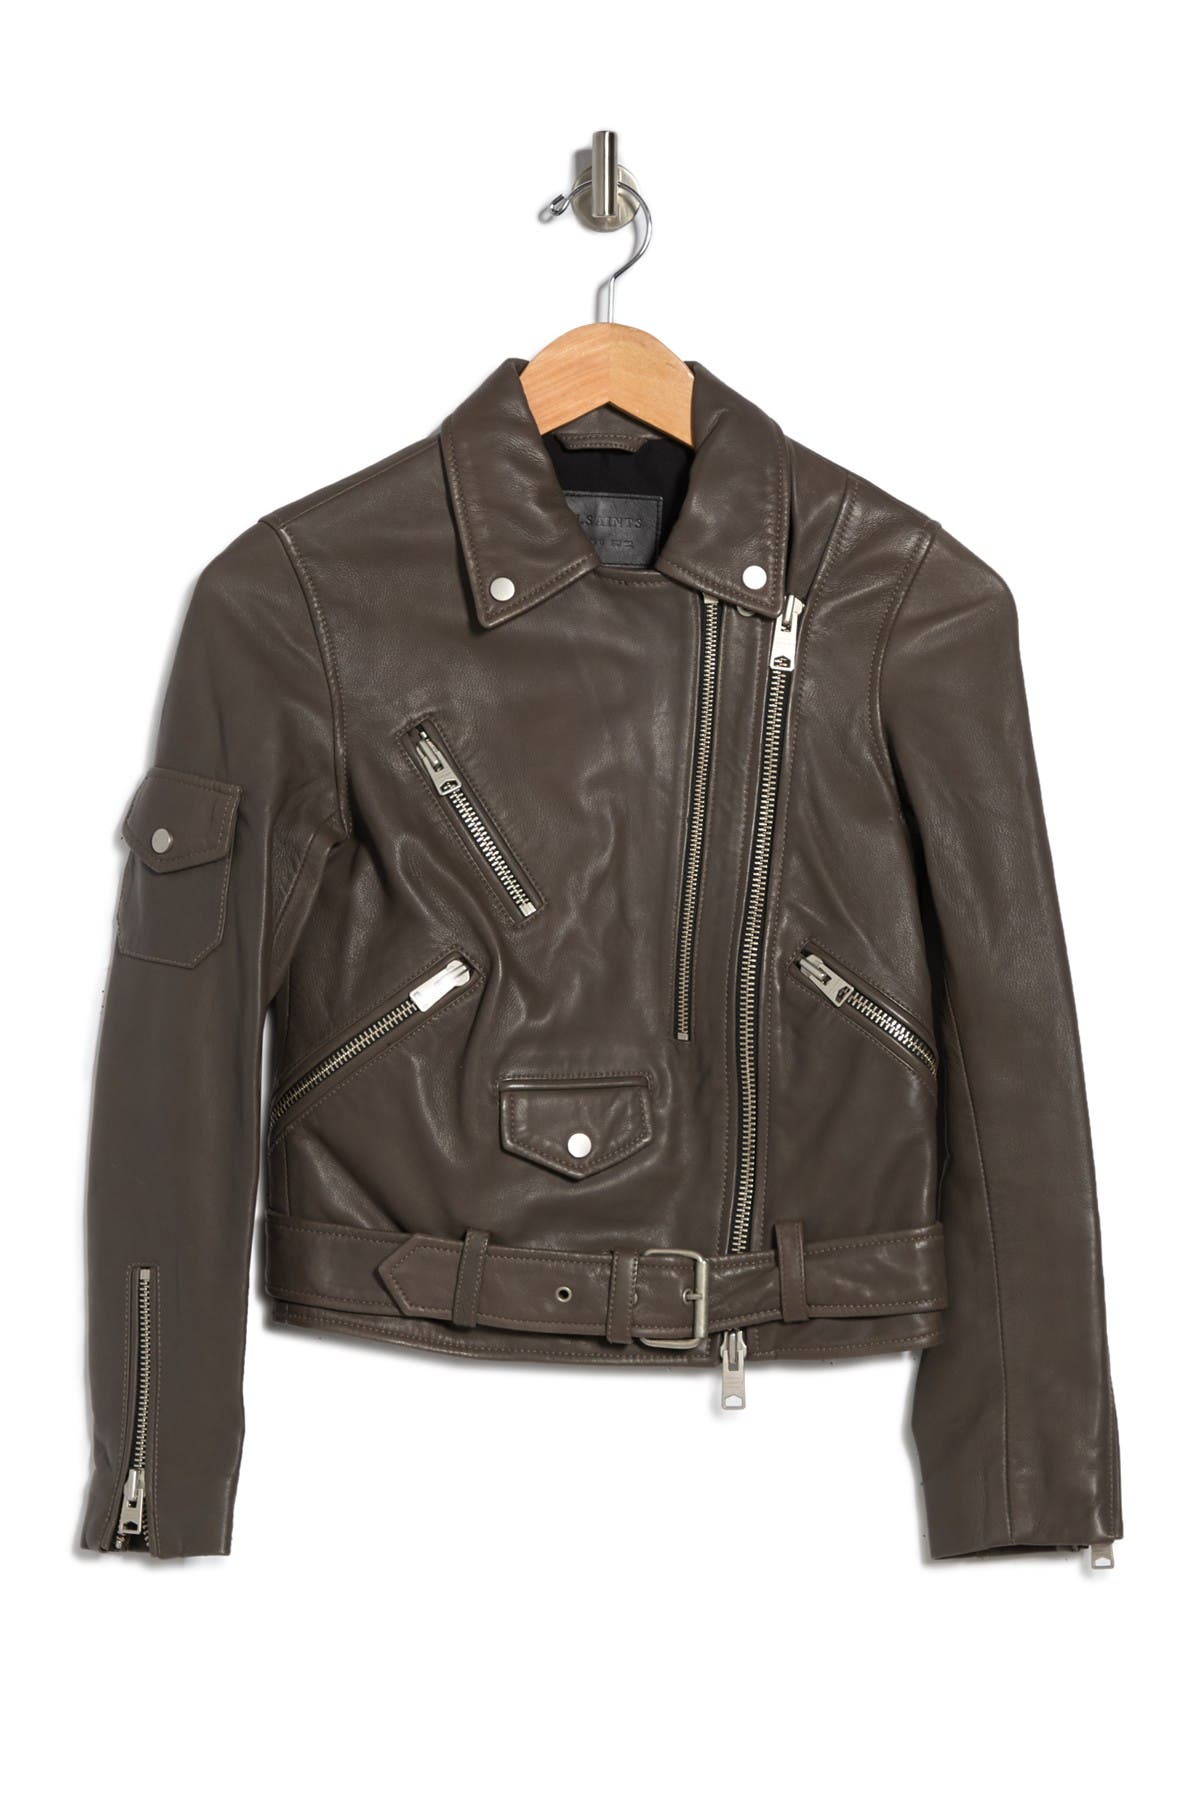 Allsaints Harland Leather Biker Jacket In Open Grey19